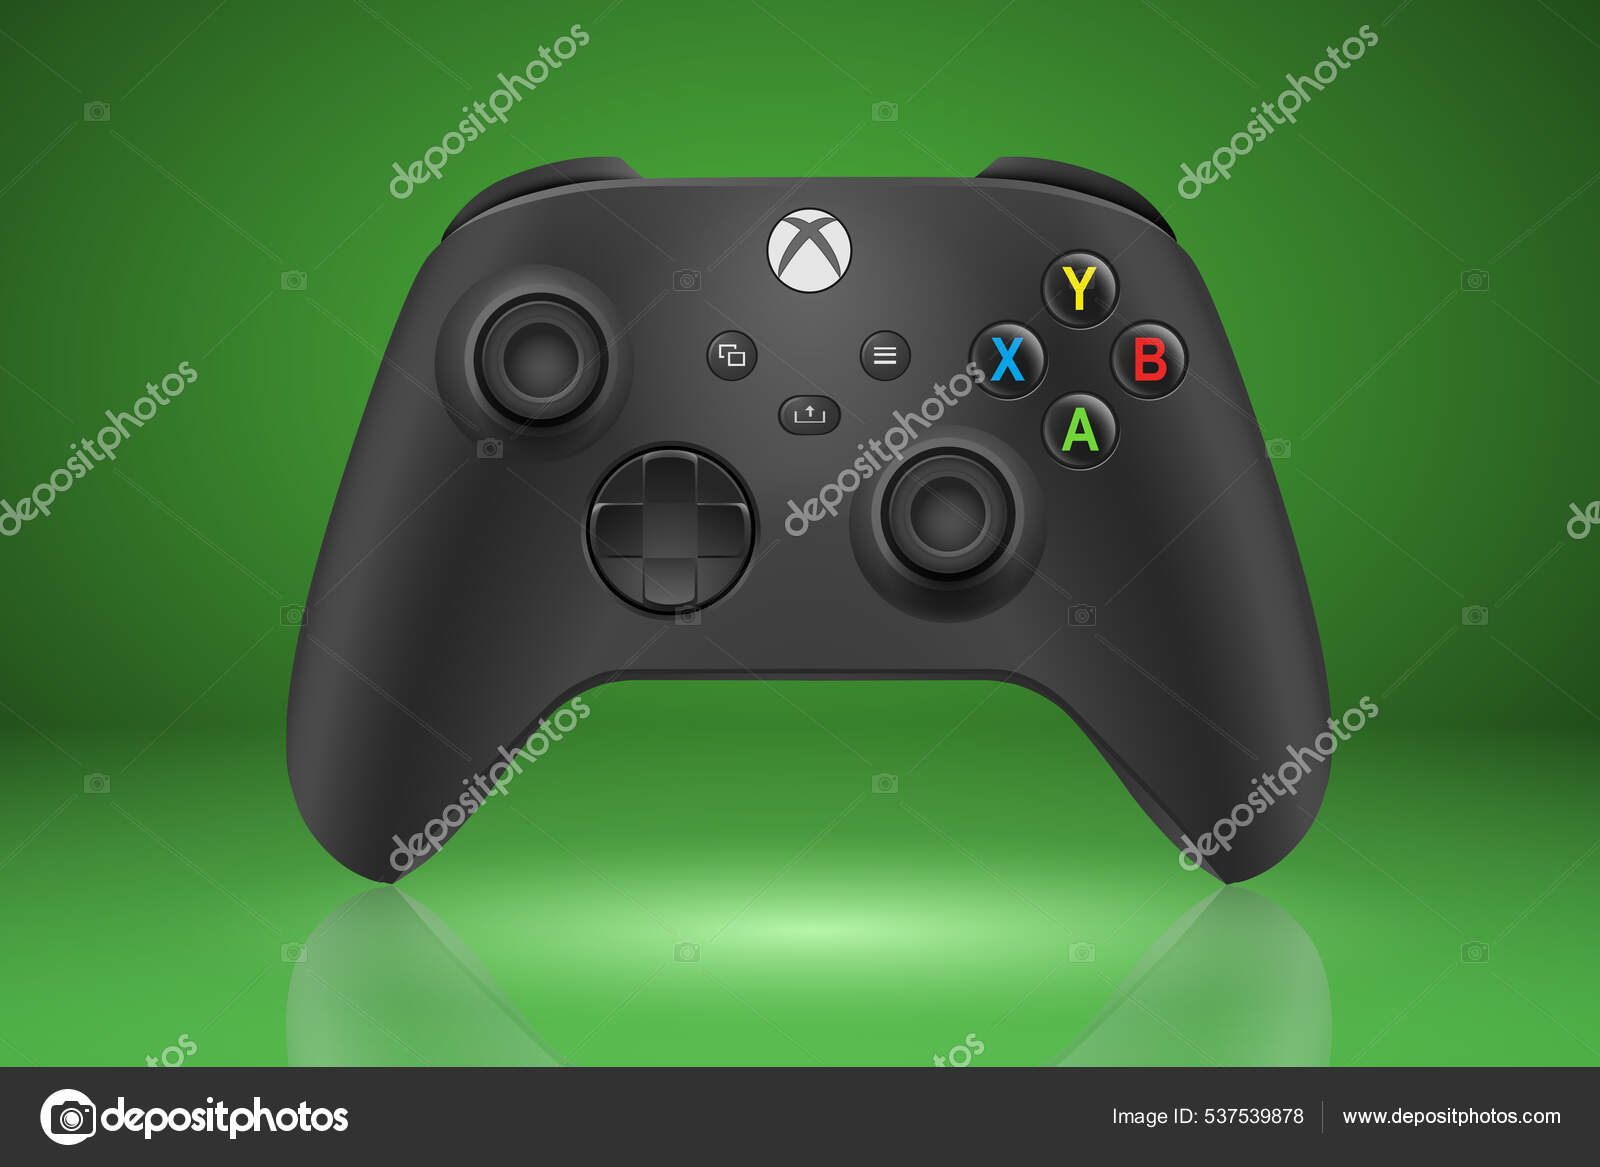 Với những game thủ yêu thích Xbox Series, BXH xin giới thiệu tay cầm Xbox Series màu xanh lá cây - một sản phẩm độc đáo và phong cách. Đặc biệt, chiếc tay cầm này được bán tại Nga vào tháng 12 năm 2021, hứa hẹn sẽ là món quà ý nghĩa dành cho các fan của Xbox!